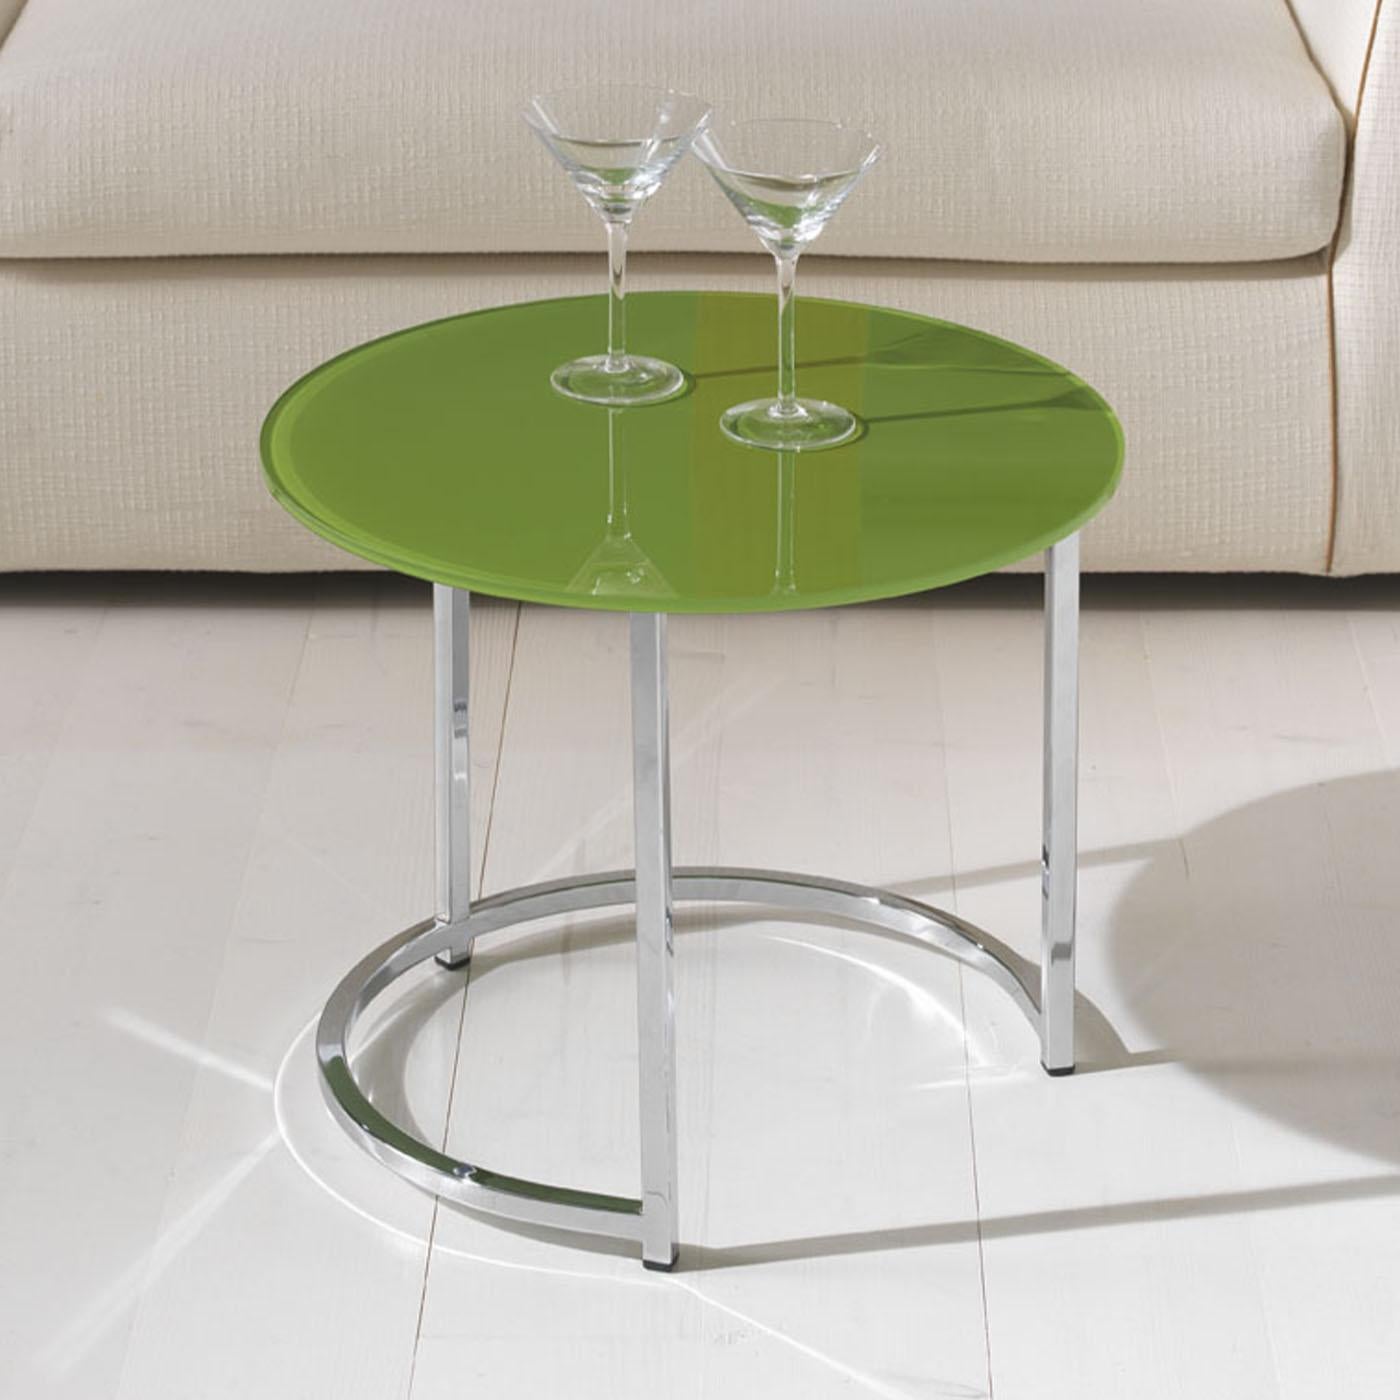 Conçue par Danilo Bonfanti & Gabriele Moscatelli, cette table basse est l'expression de l'art et de l'innovation. Fabriqué avec une structure métallique élégante, le plateau de la table présente une surface en verre peint élégamment soutenue par une